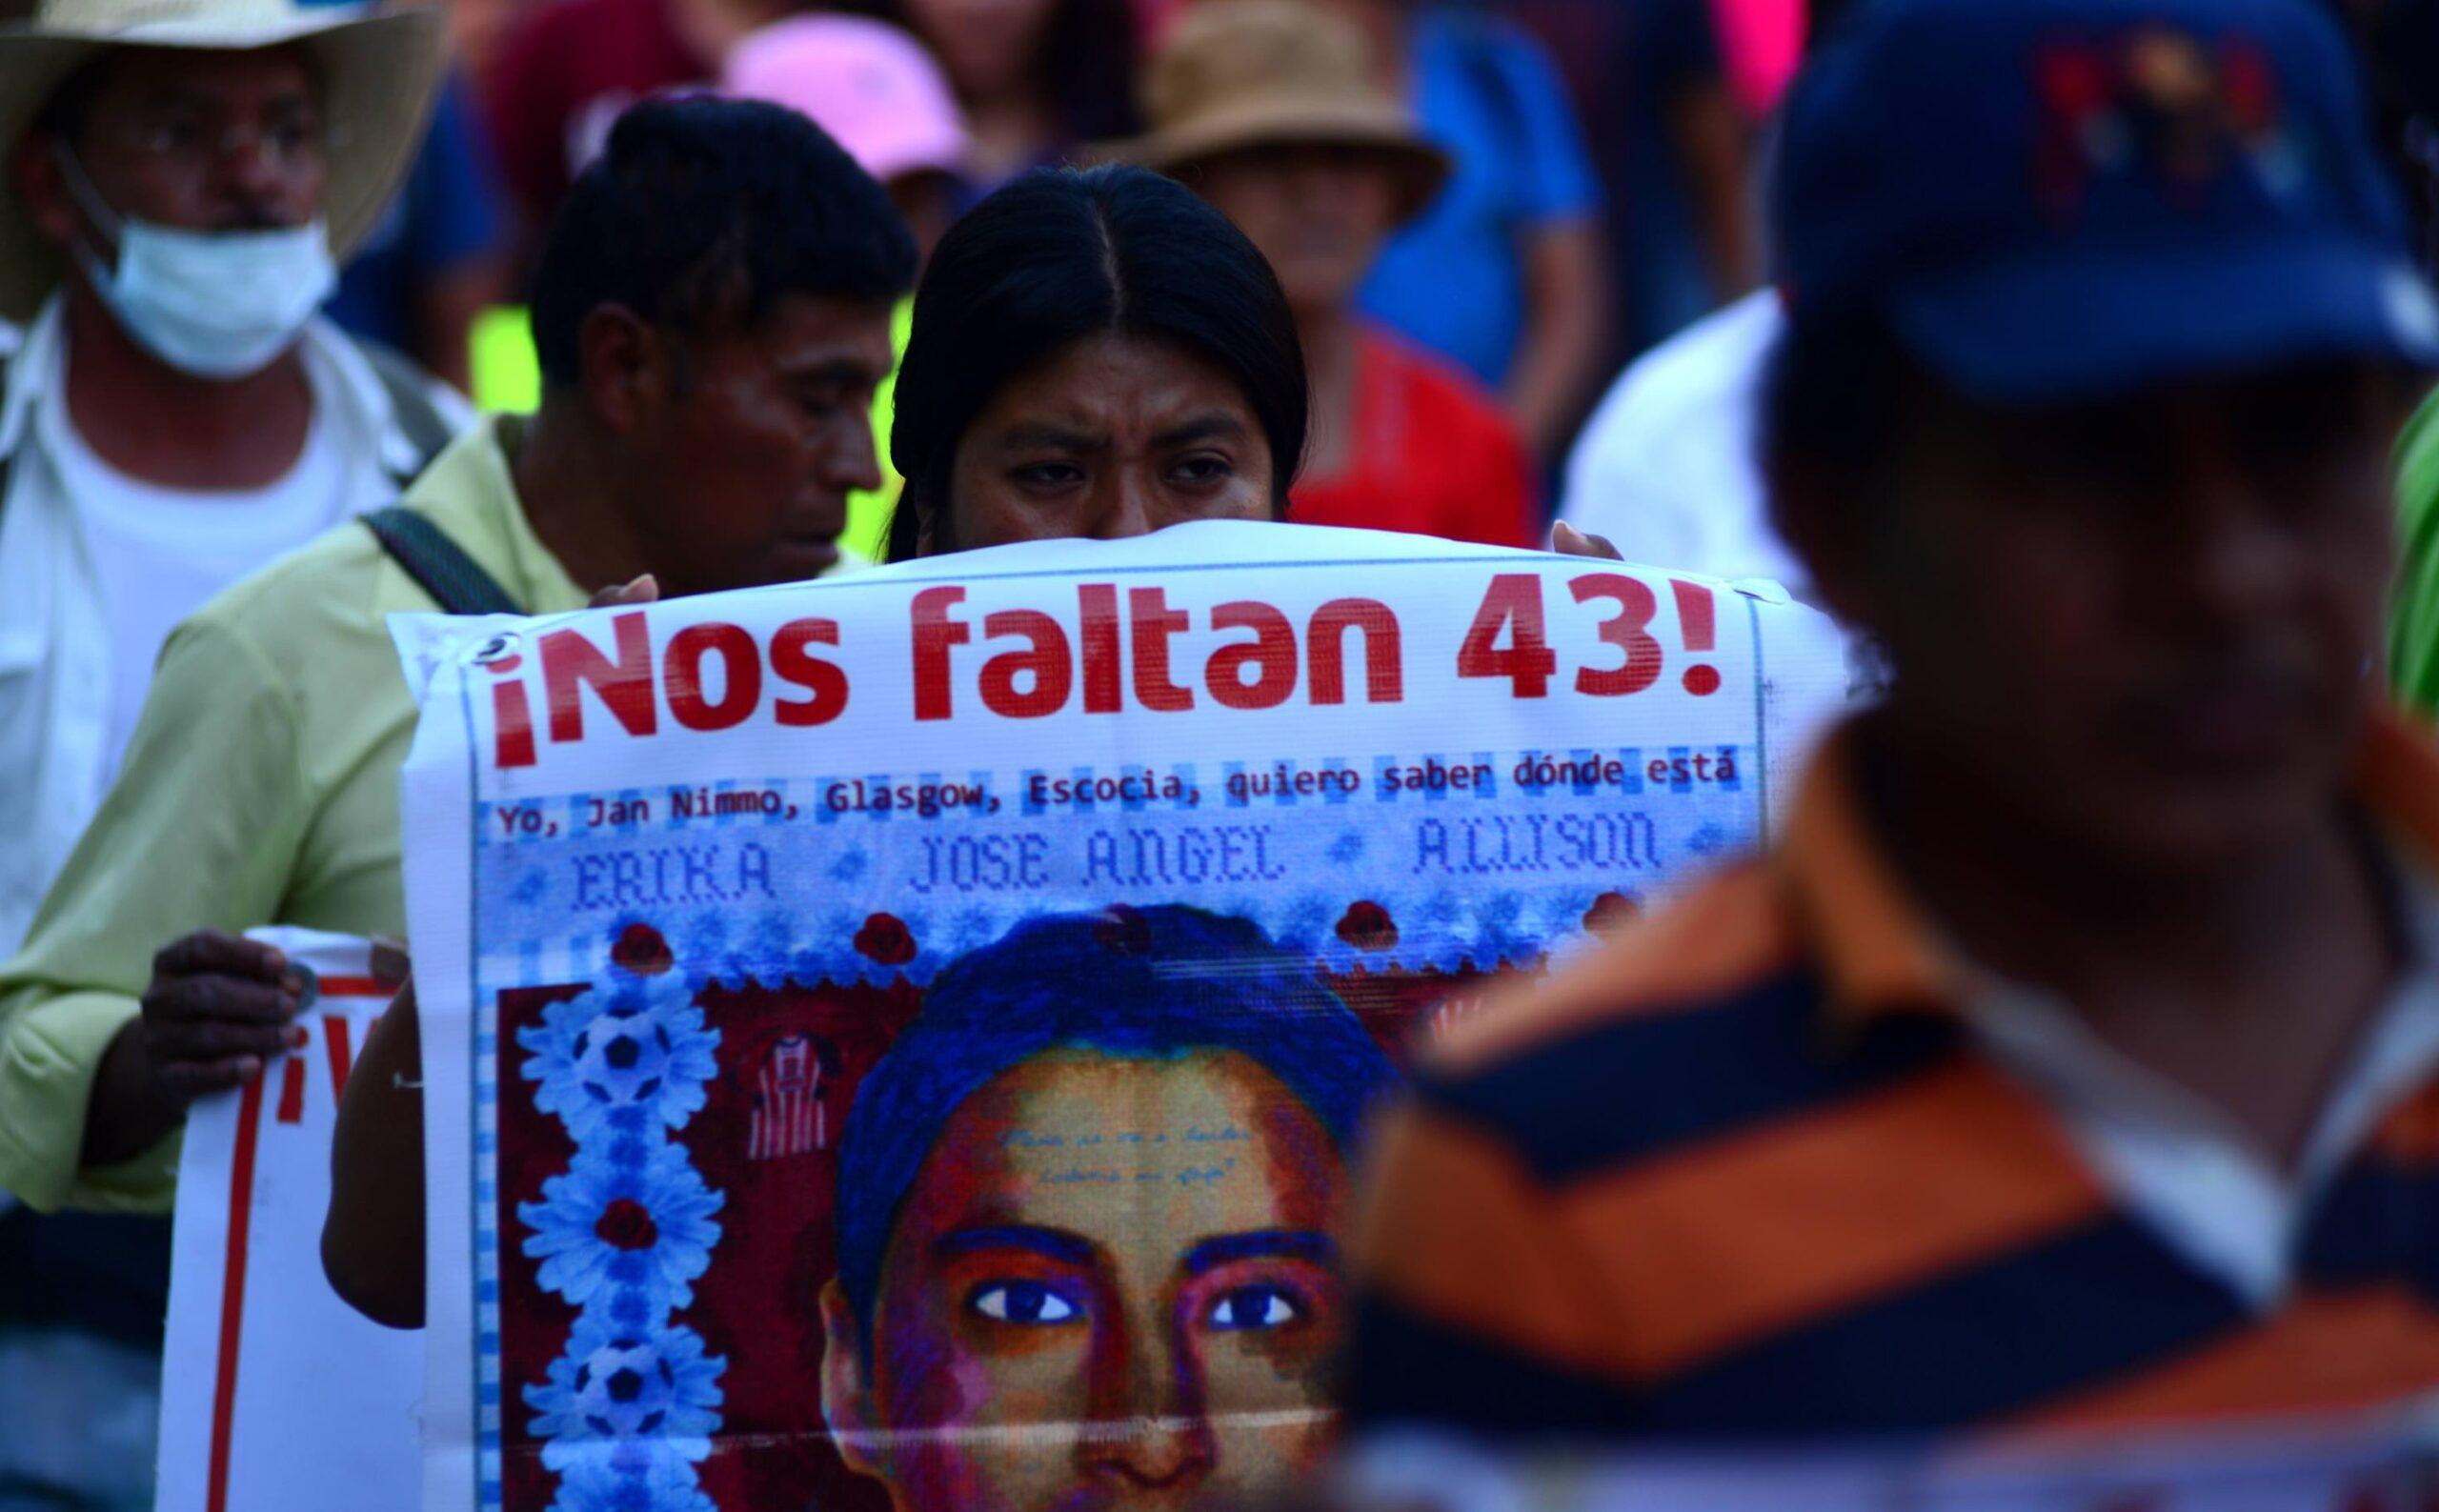 Policías federales y de Huitzuco participaron en la desaparición de normalistas: CNDH